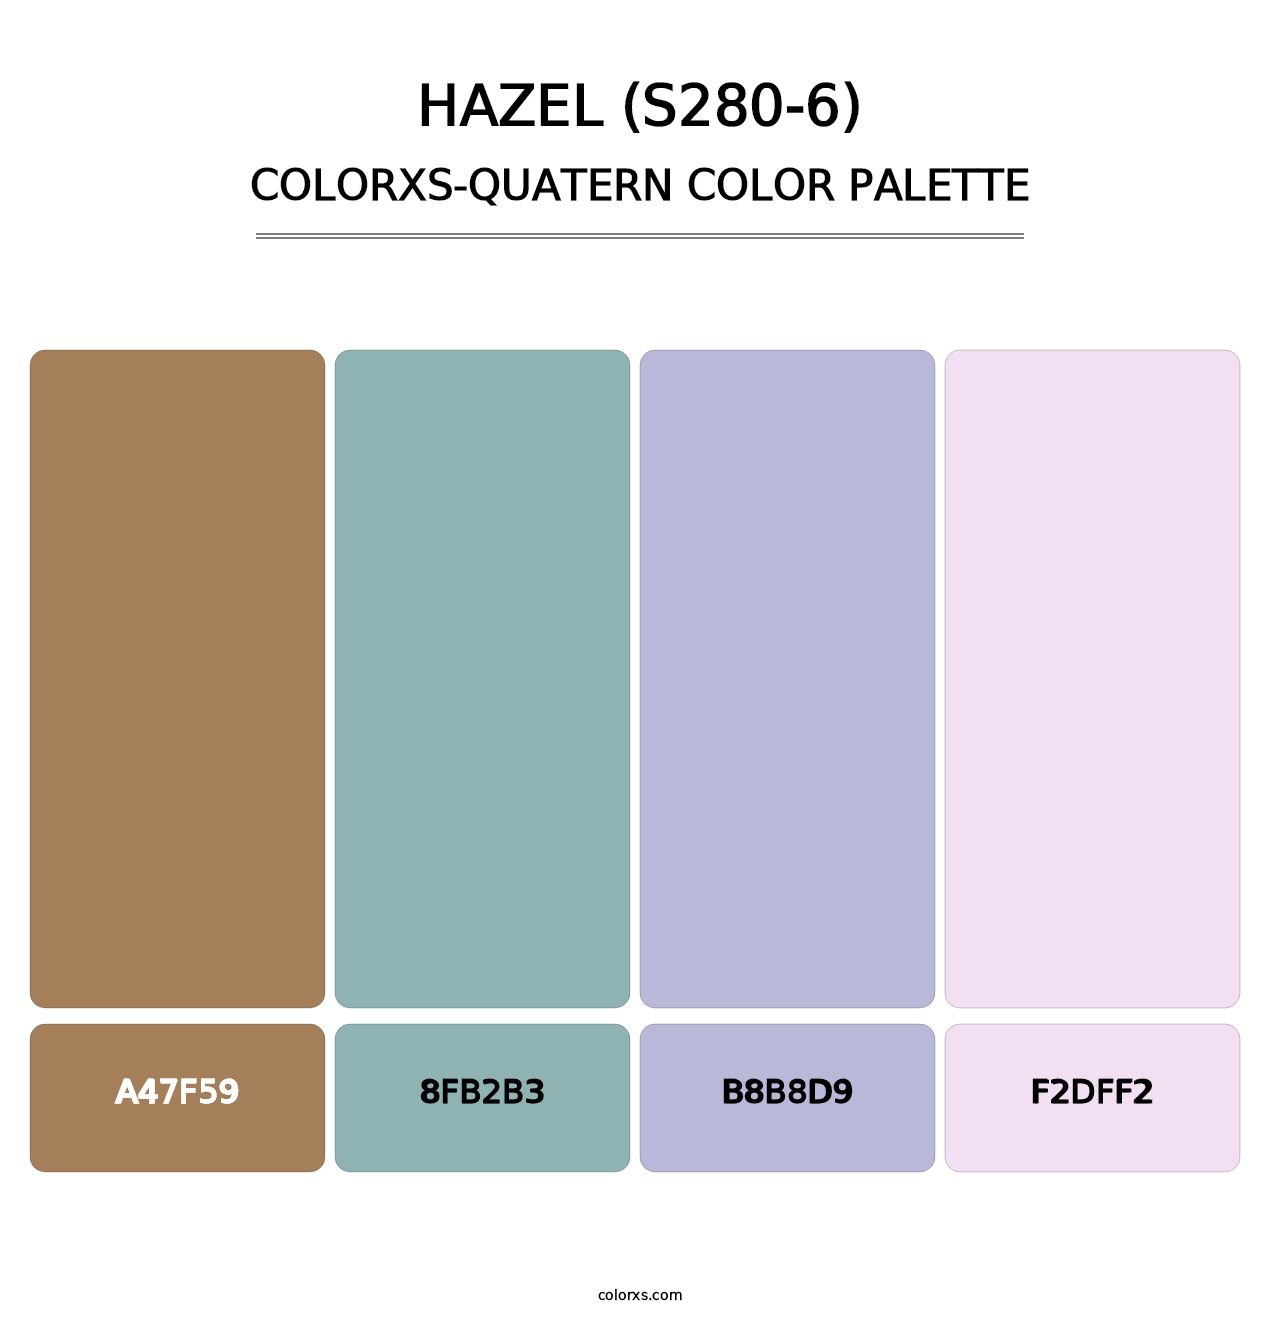 Hazel (S280-6) - Colorxs Quatern Palette